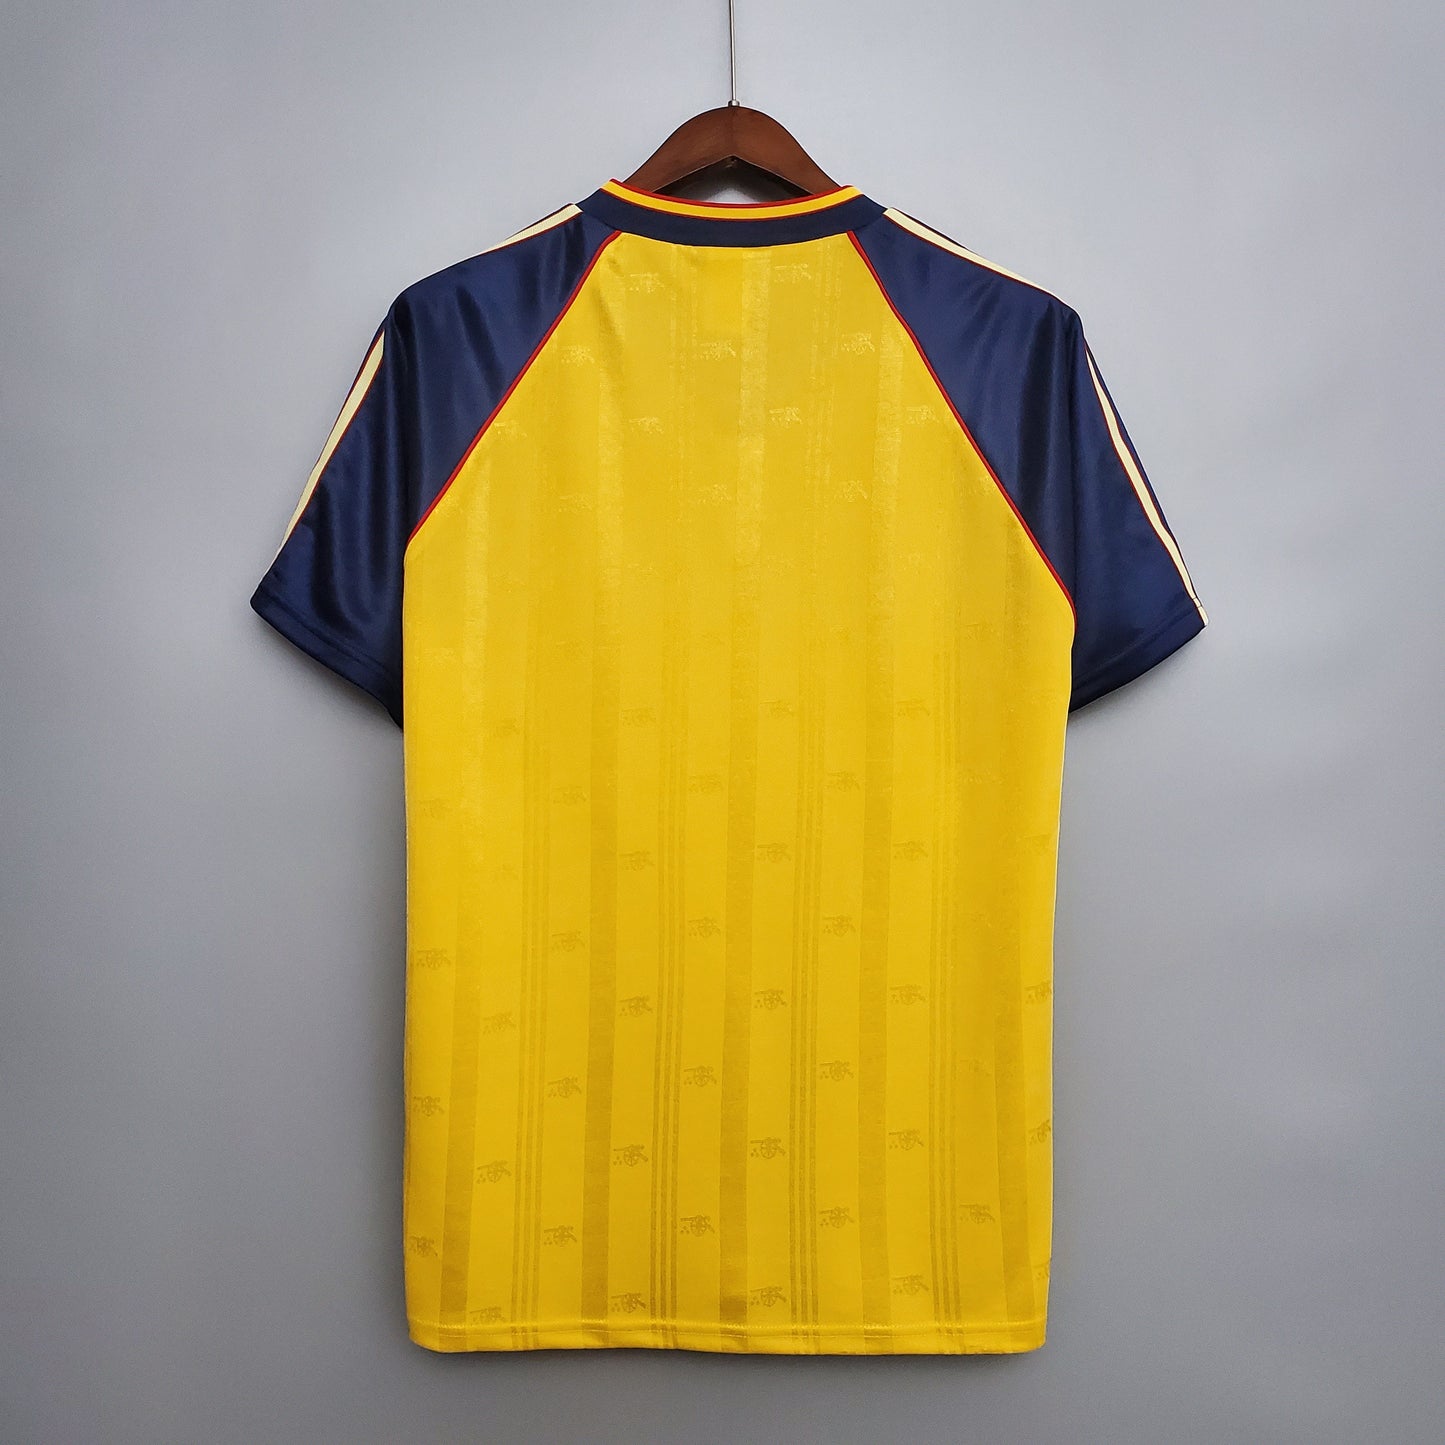 Arsenal Away Kit 88/89